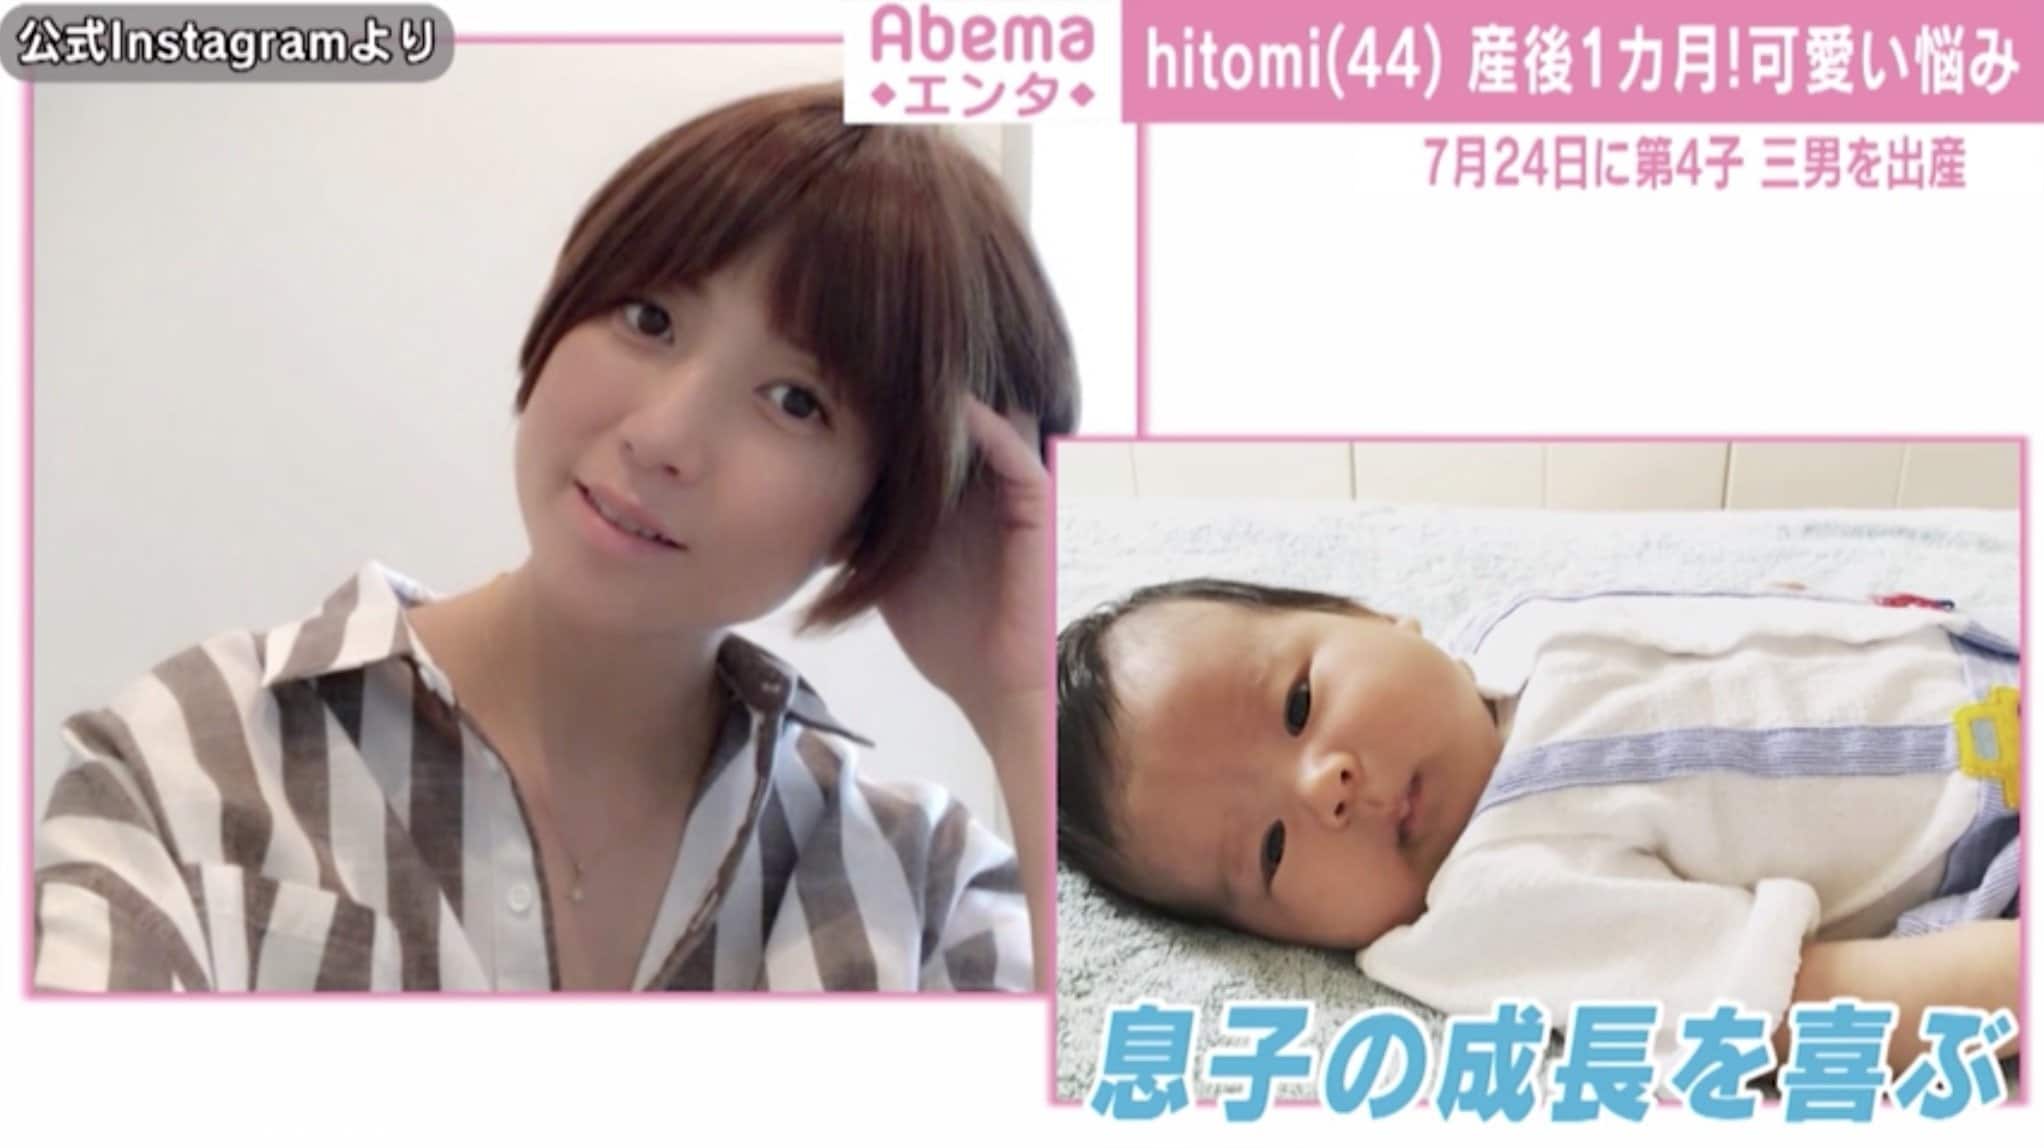 産後1ヶ月のhitomi 第4子の成長に喜びと 悩み ムチムチ可愛い 愛しいですね の声 芸能 Abema Times